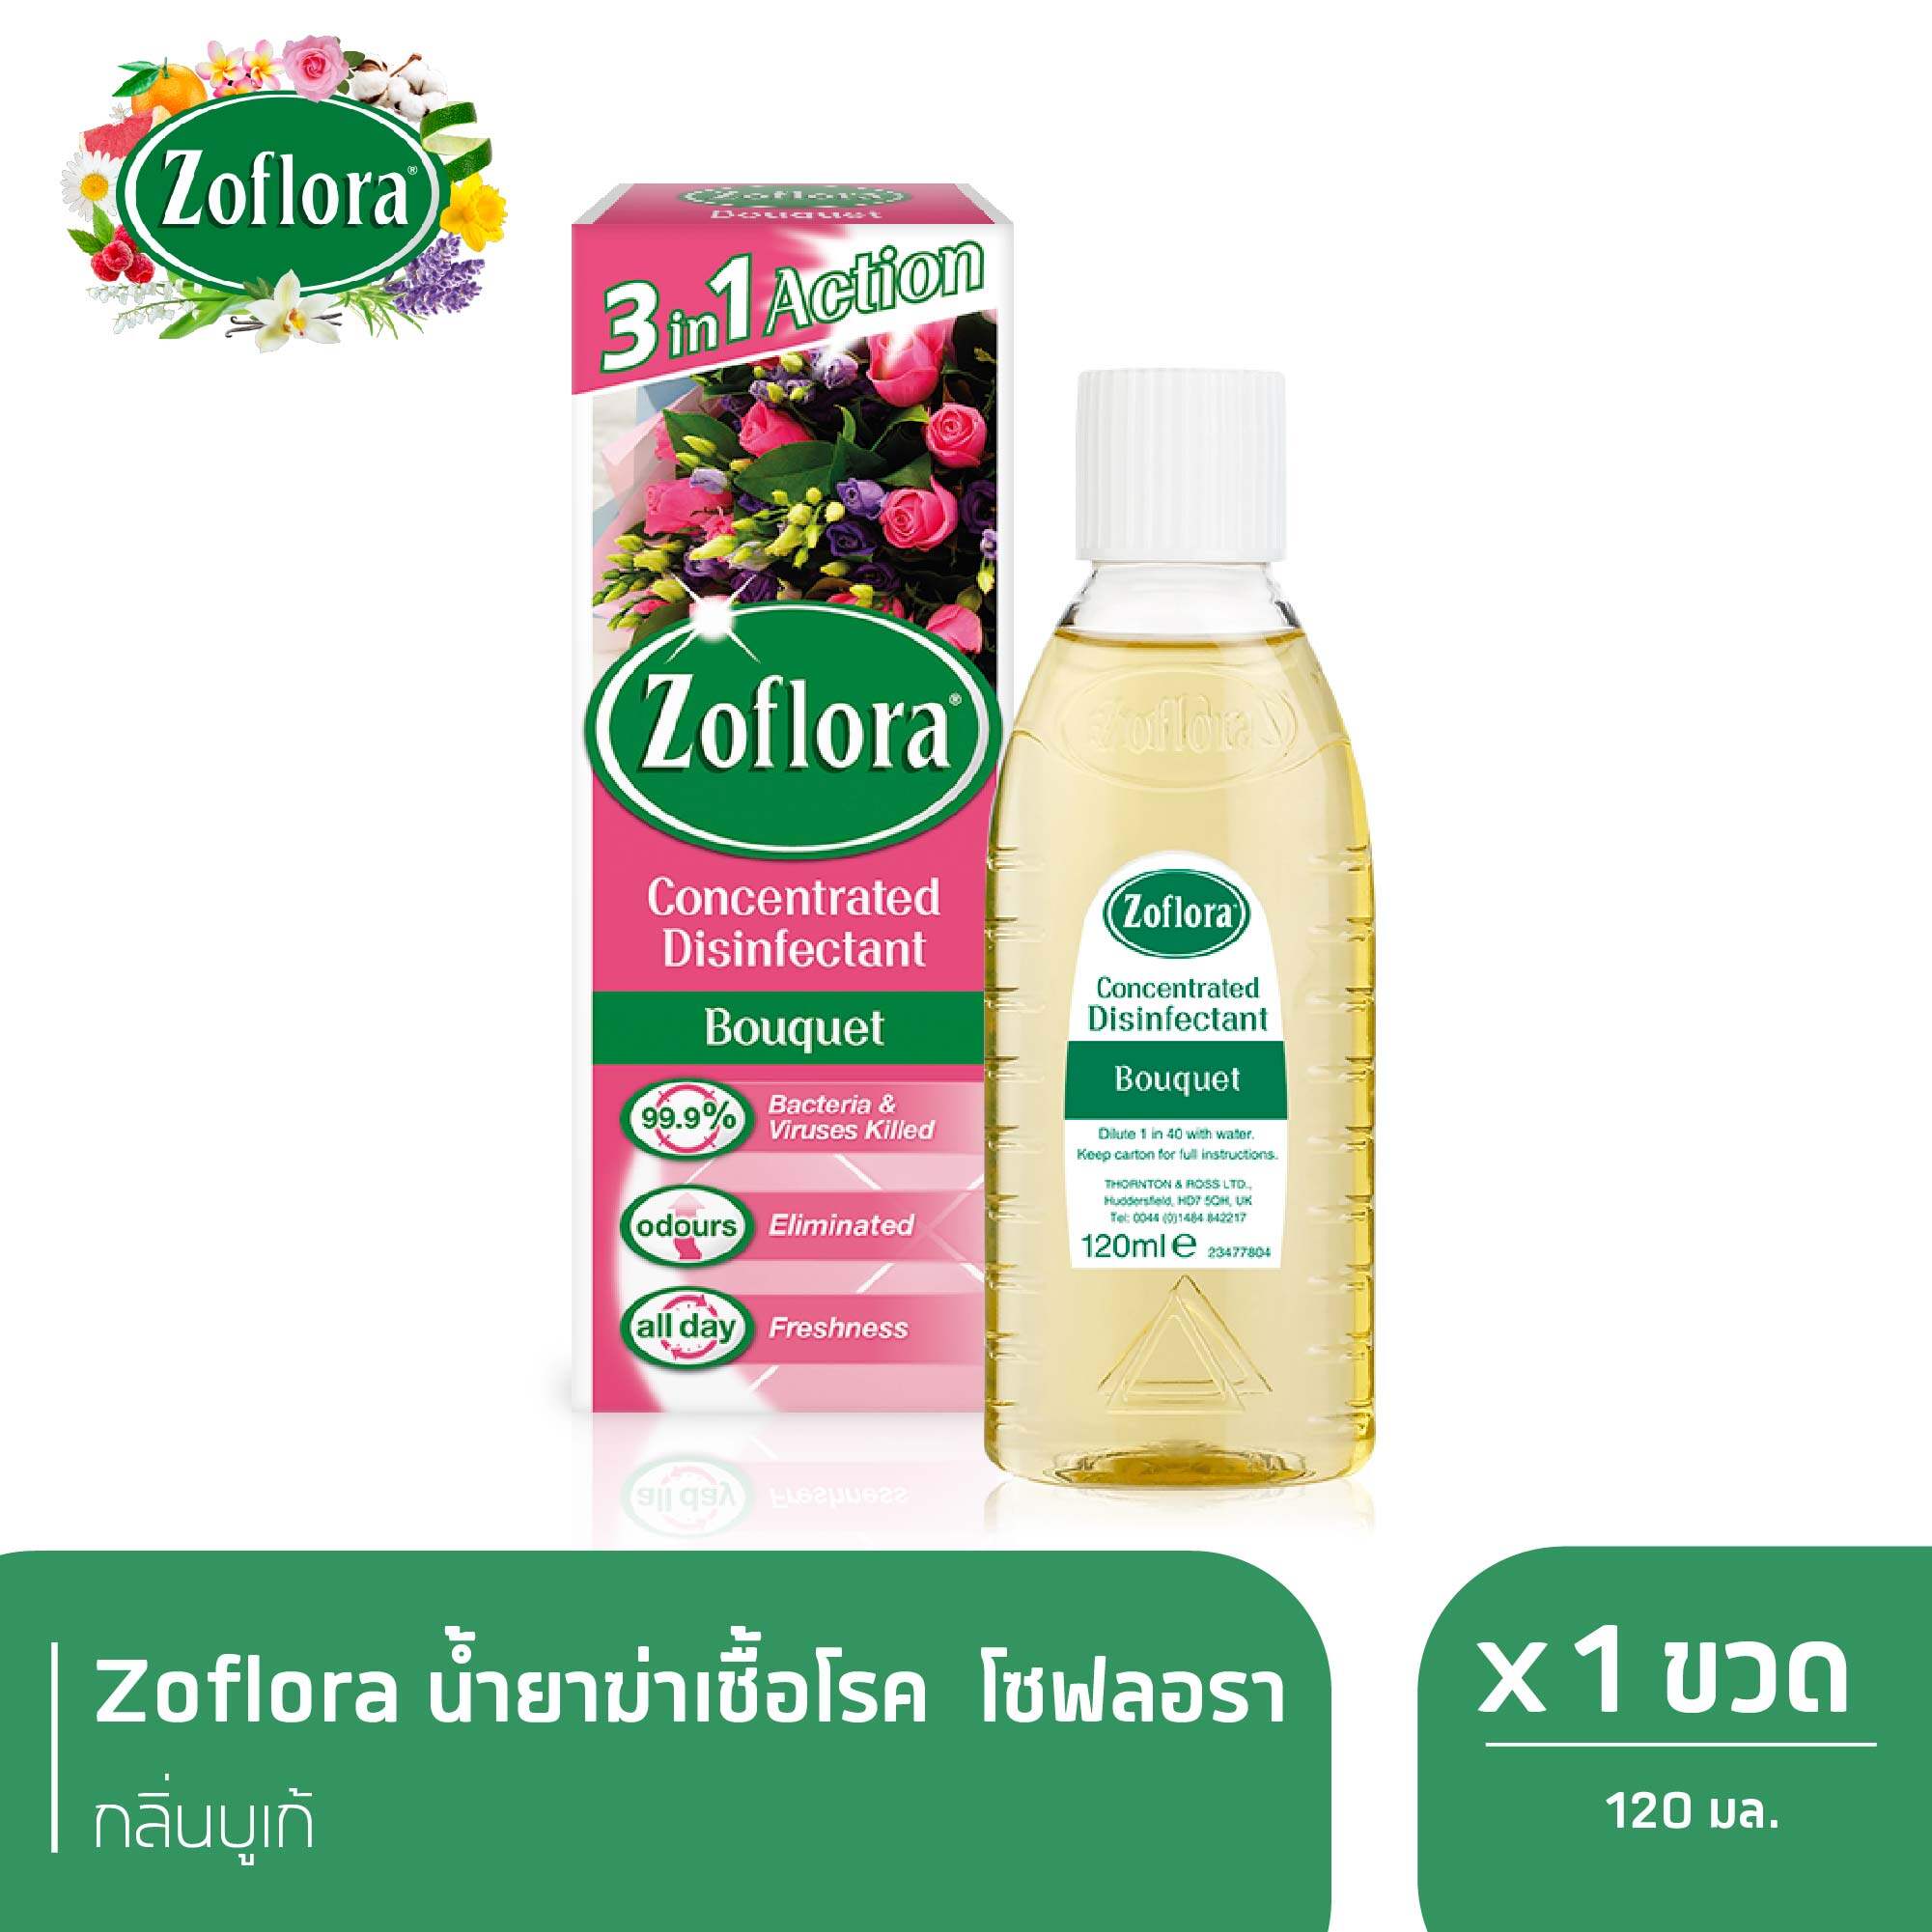 Zoflora น้ำยาฆ่าเชื้ออเนกประสงค์ สูตรเข้มข้น โซฟลอรา กลิ่นบูเก้ 120 มล. X 1